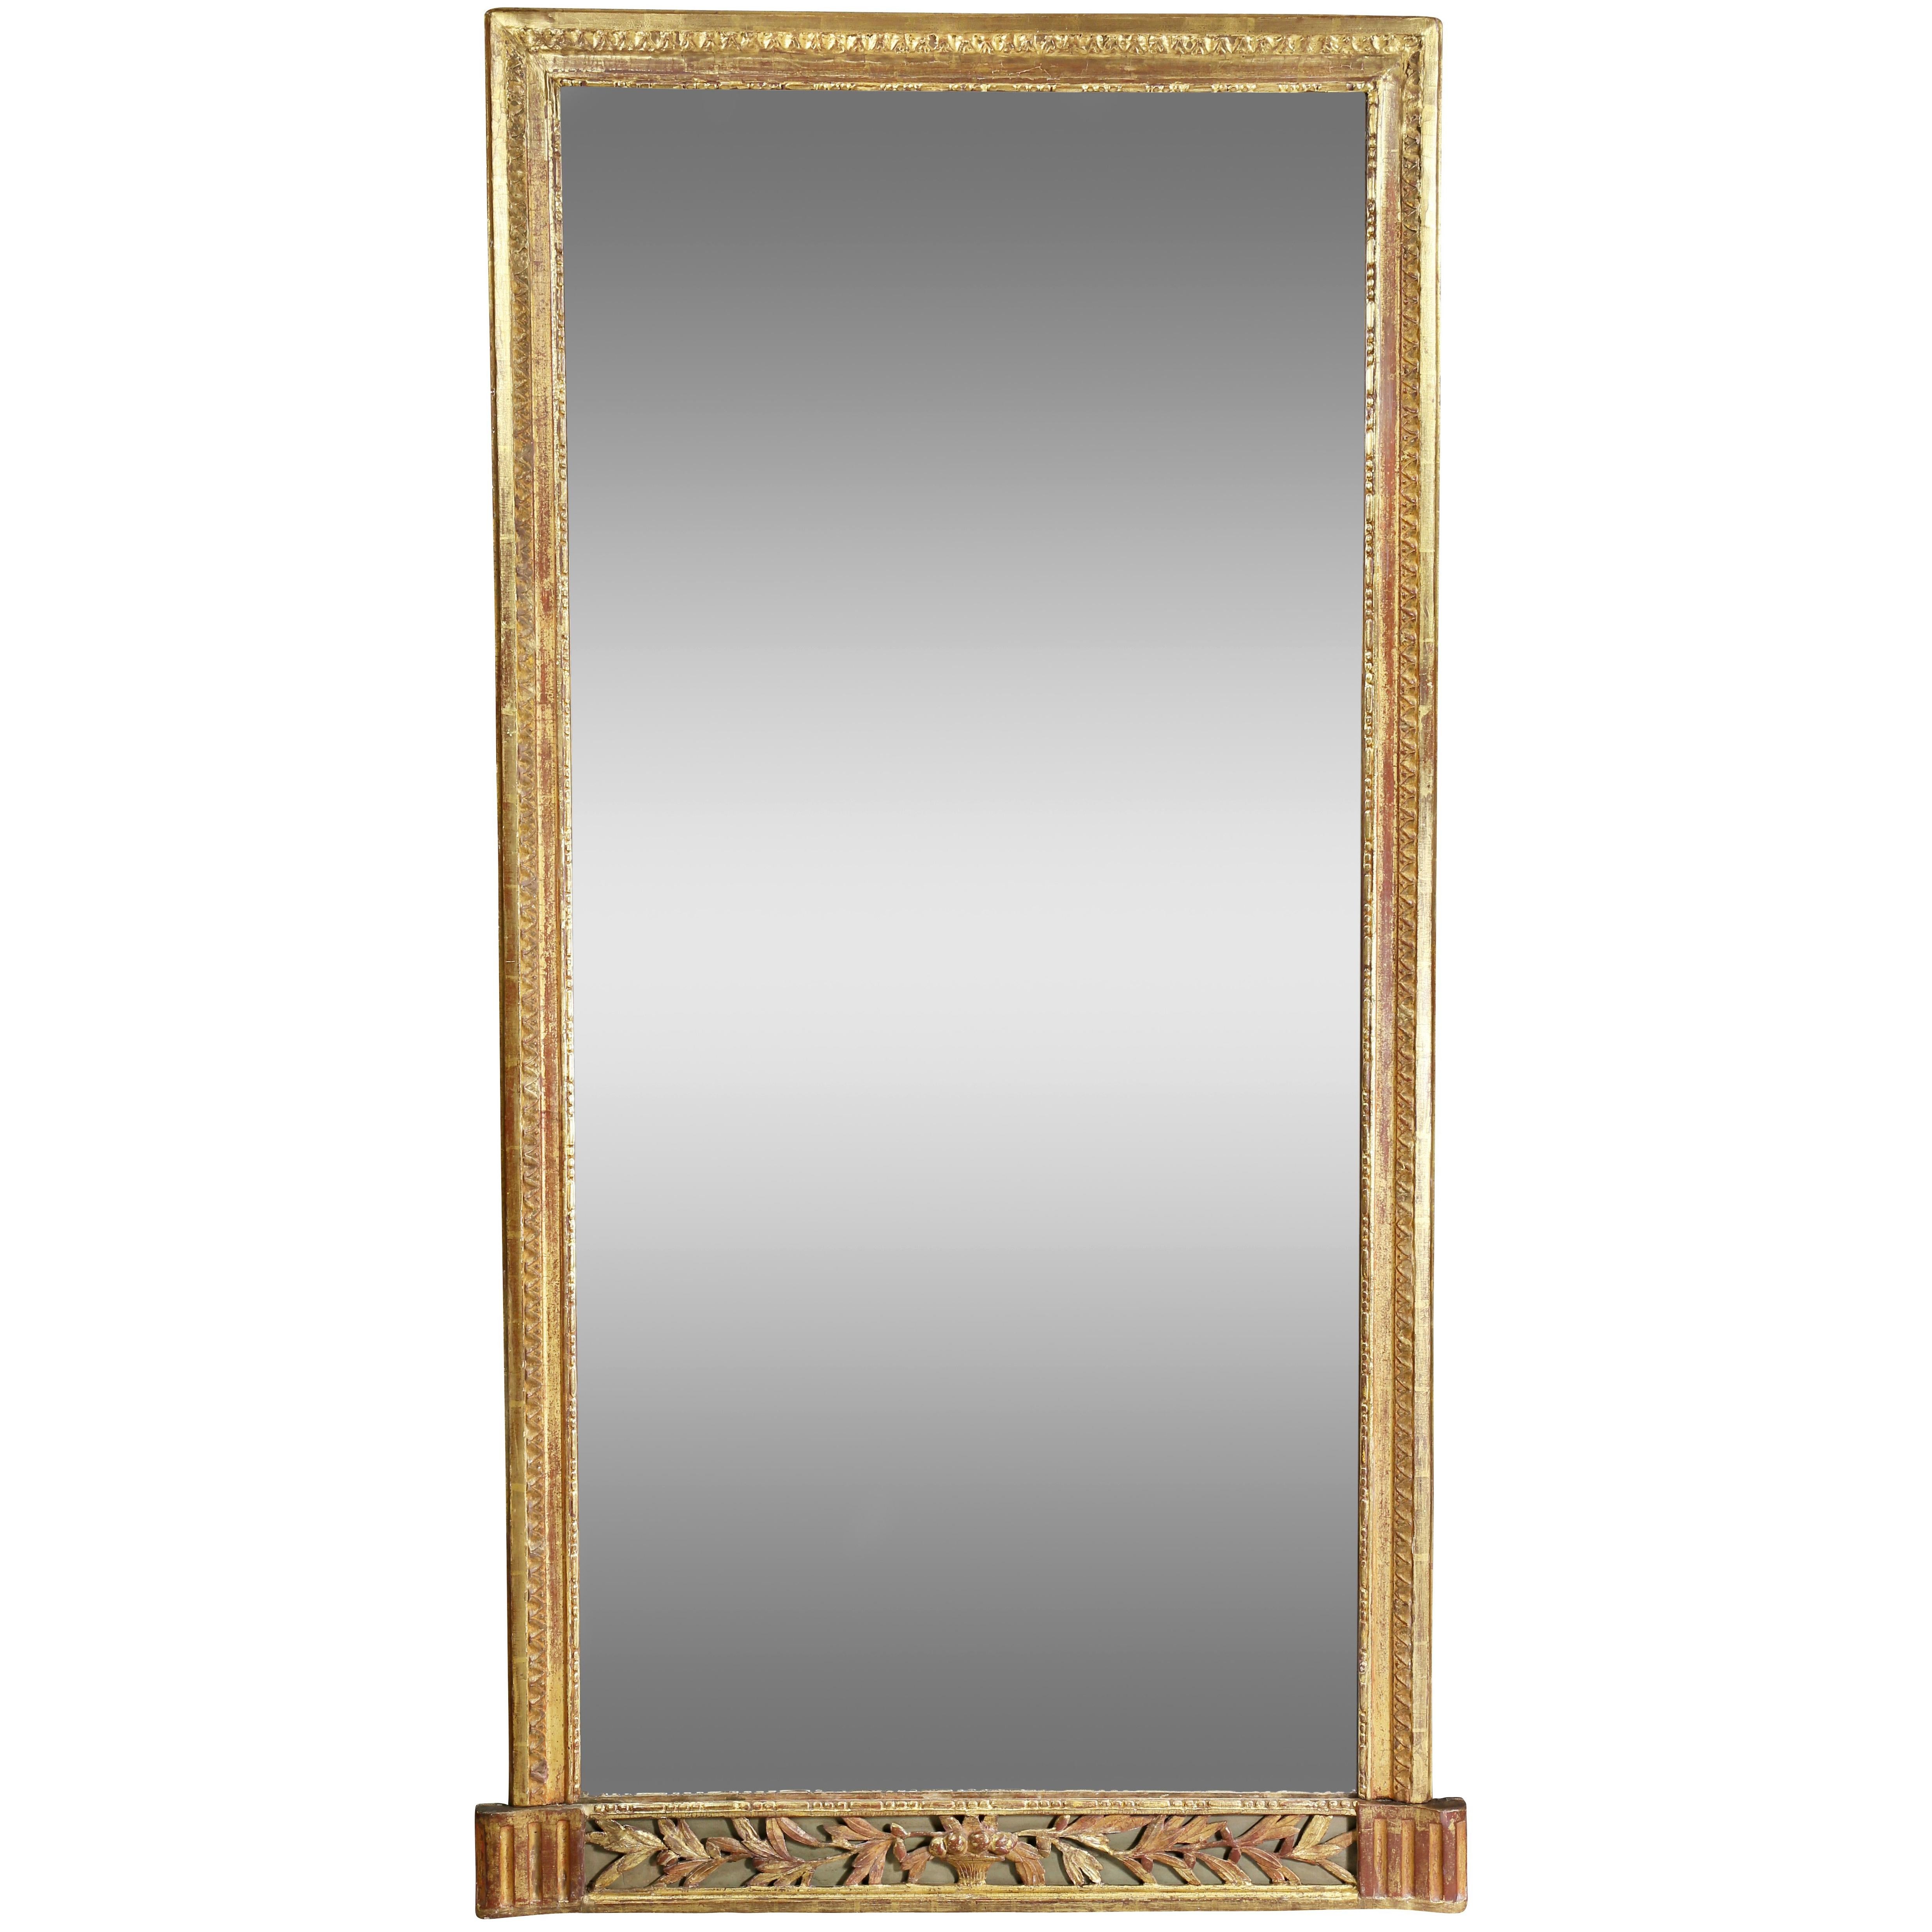 Louis XVI Giltwood Pier Mirror